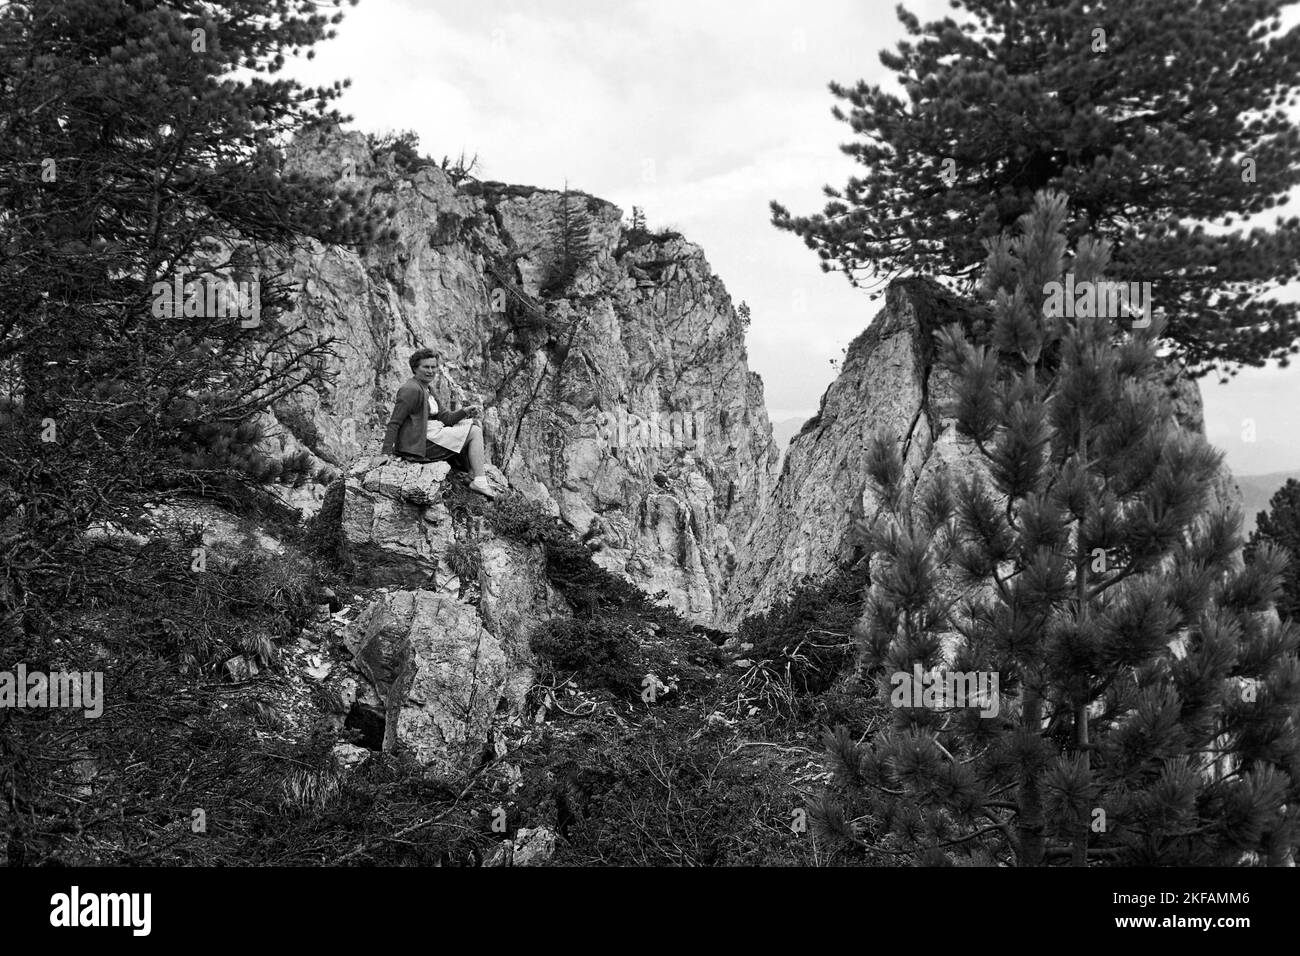 Frau Andres beim Wandern mit Ausblick im Zillertal, Tirol, 1970. Escursioni a piedi della signora Andres con vista sulla valle dello Ziller, Tirolo, 1970. Foto Stock